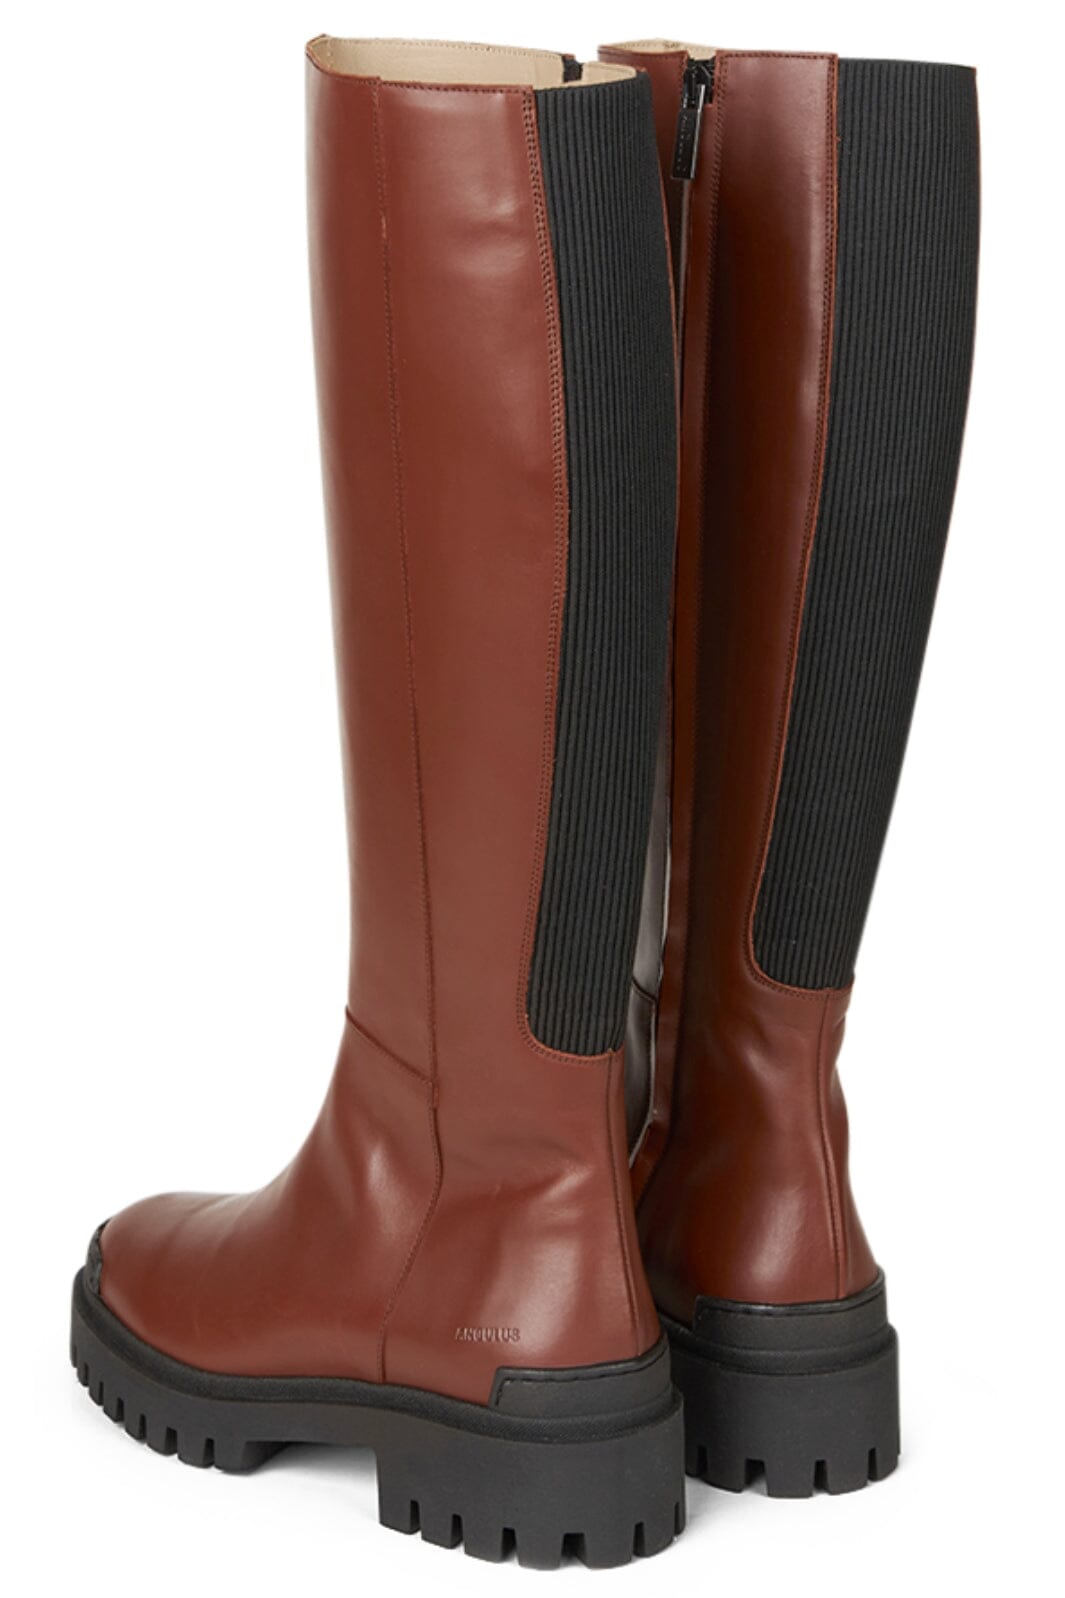 Angulus - High-leg boot - 1705/019 Terracotta/Black Støvler 